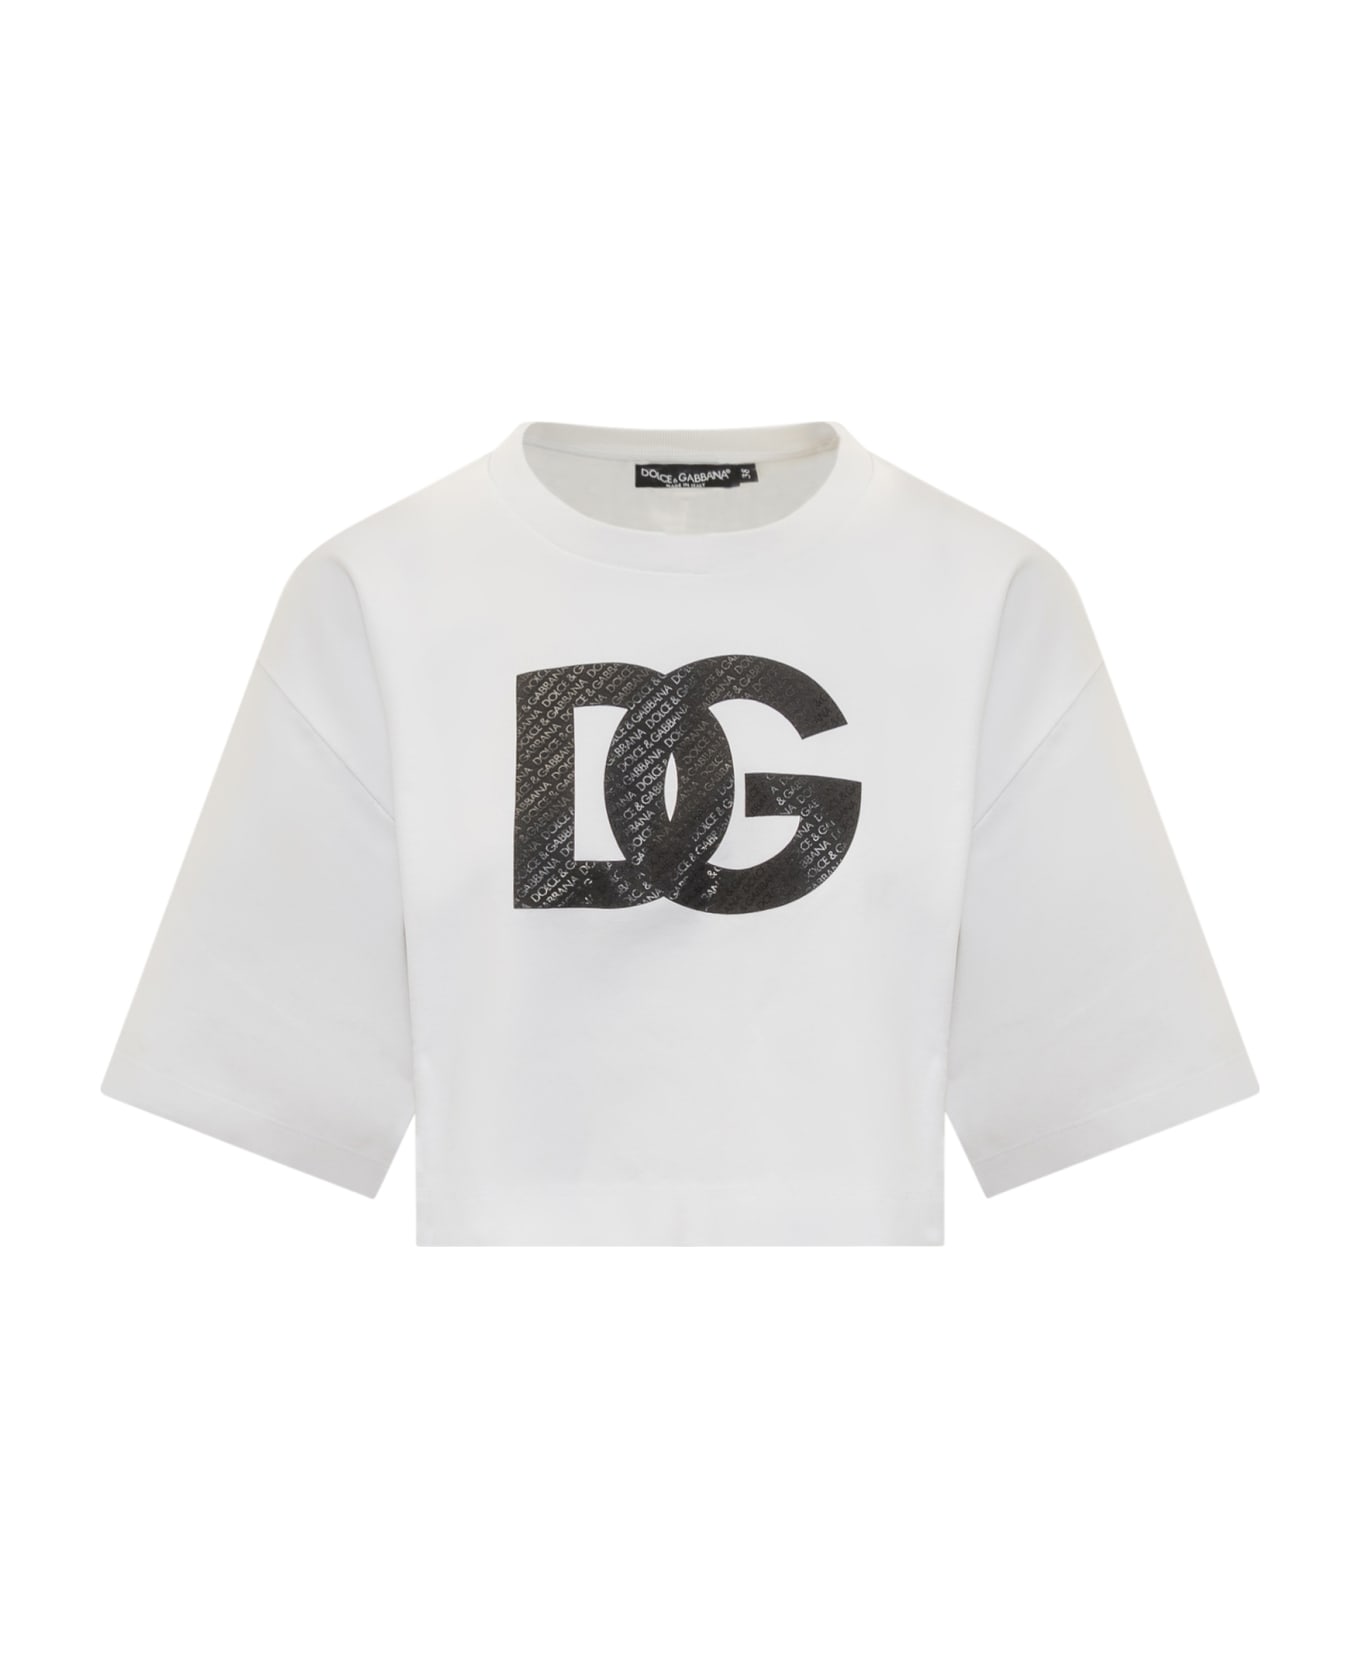 Dolce & Gabbana Cropped Logo T-shirt - White Tシャツ